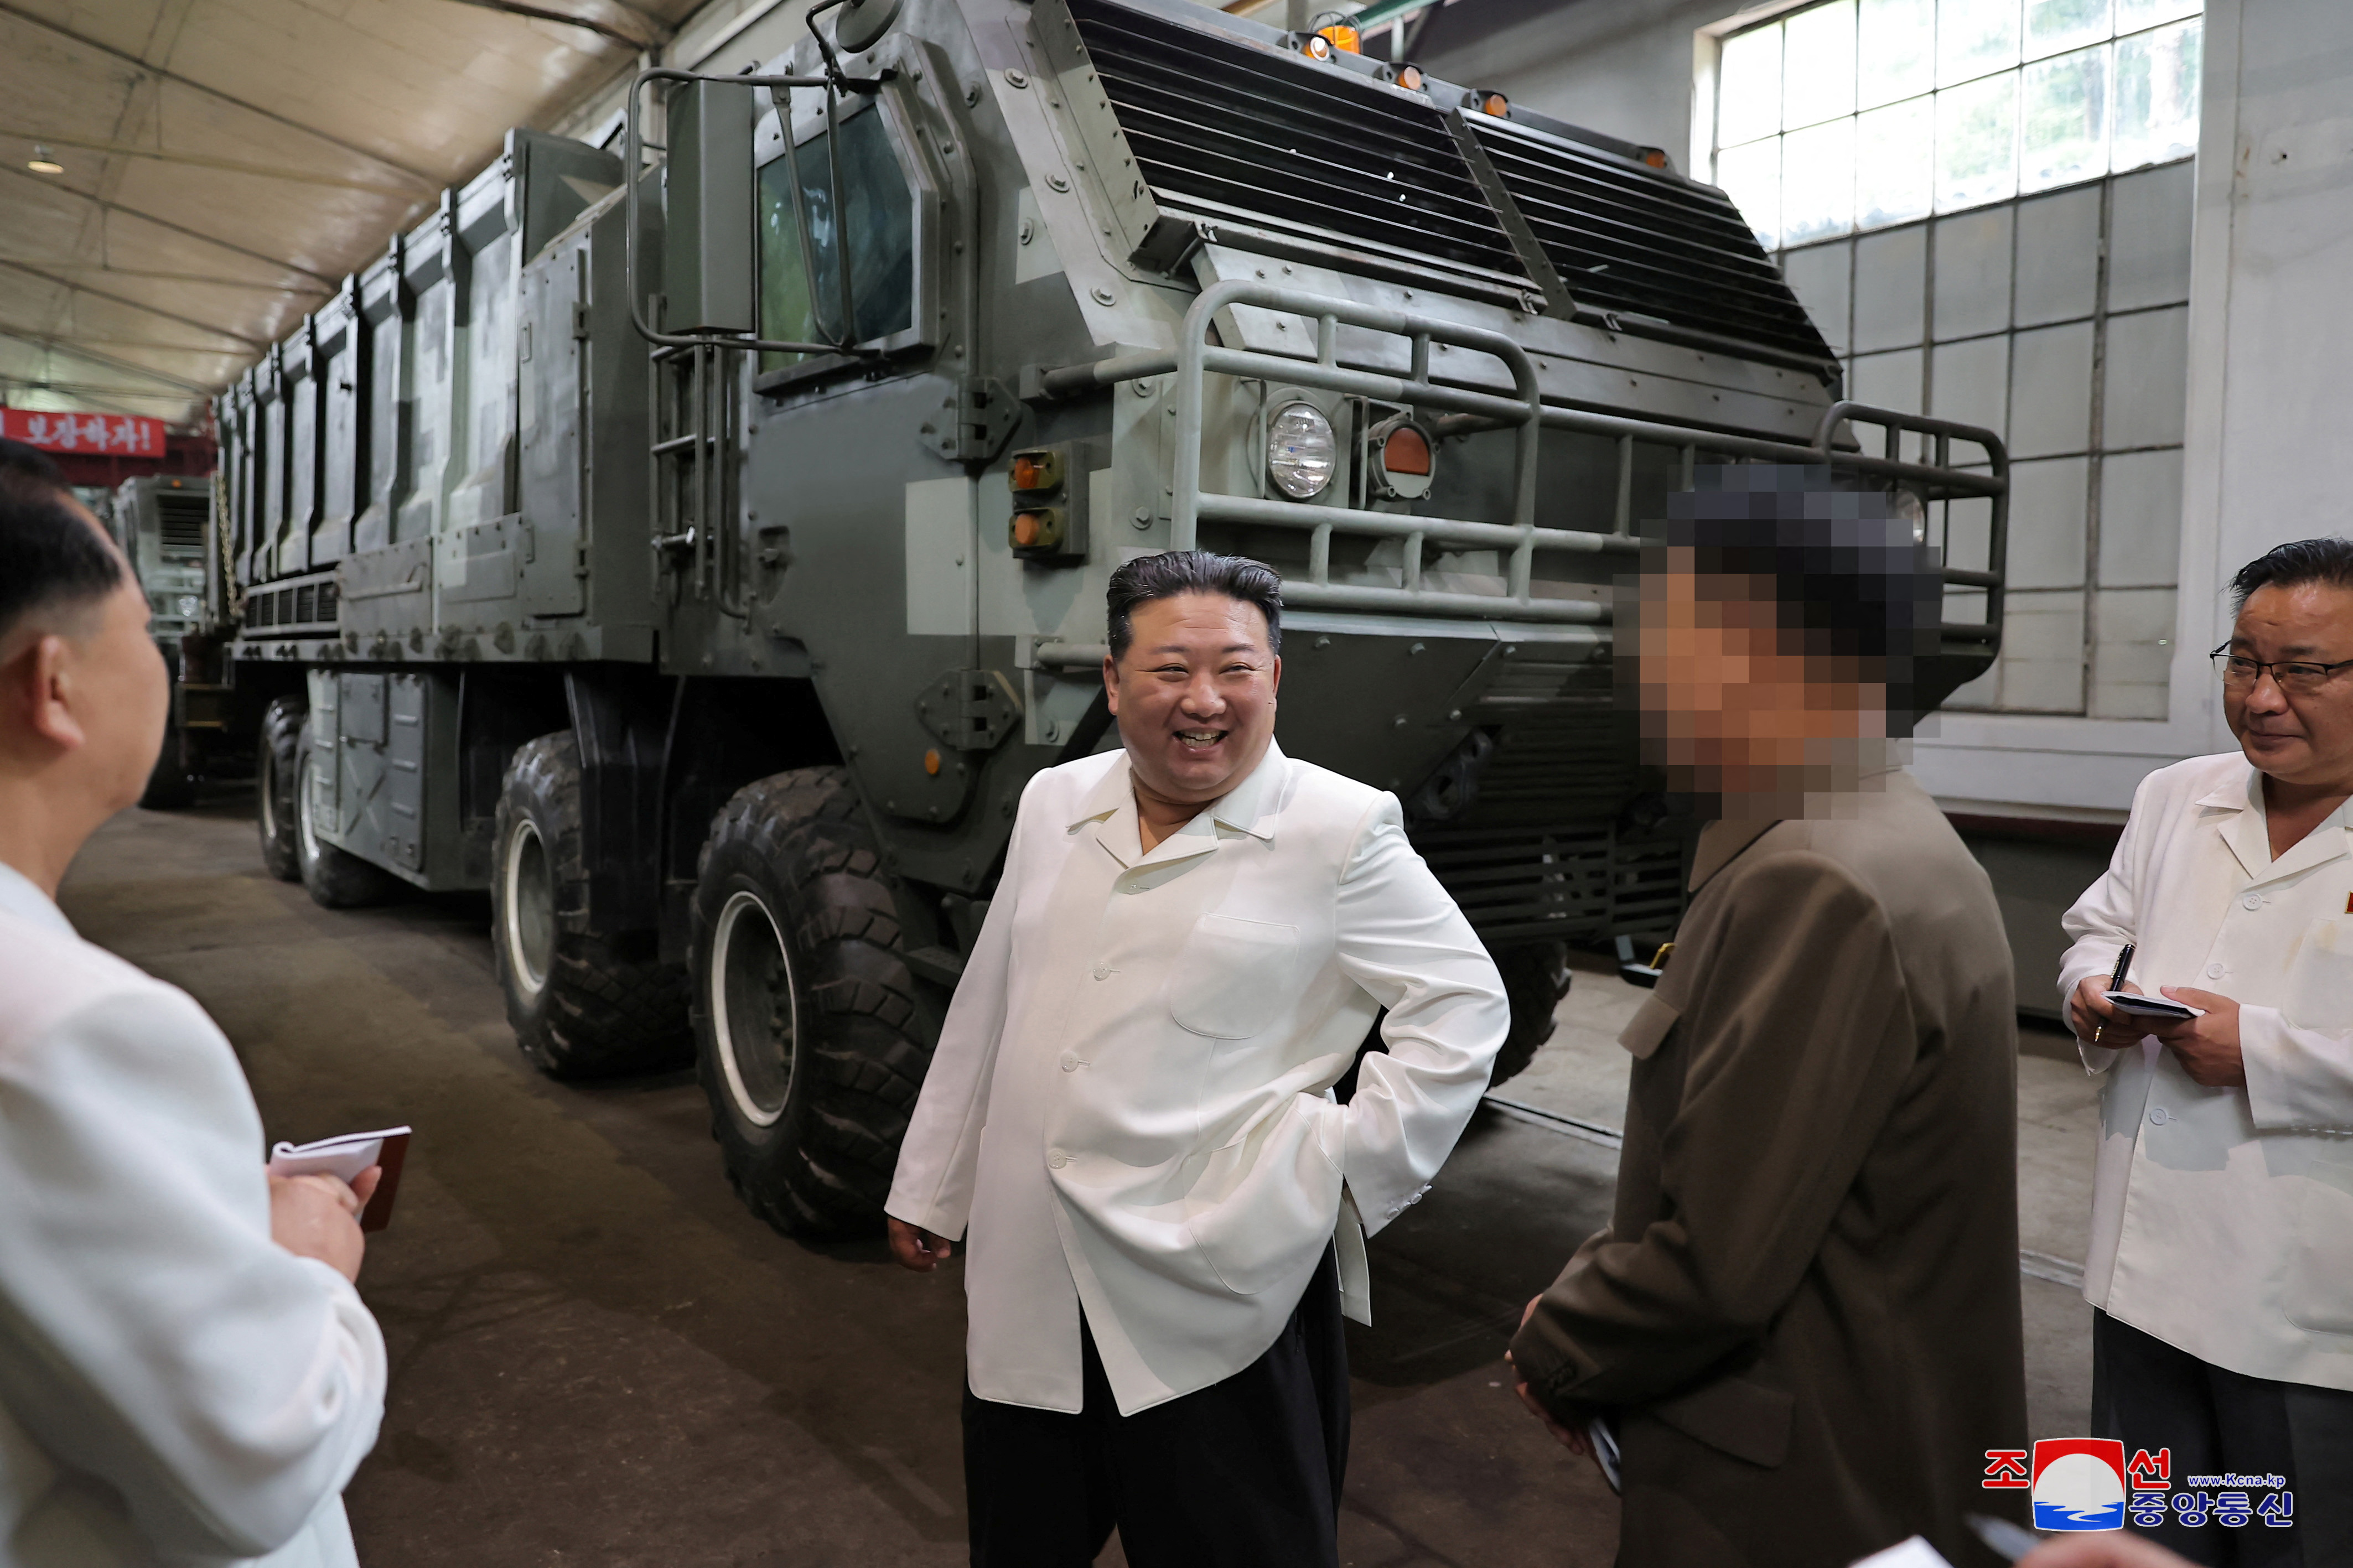 Dies geschah, nachdem der nordkoreanische Führer letzte Woche mehrere große Waffenfabriken besichtigt hatte